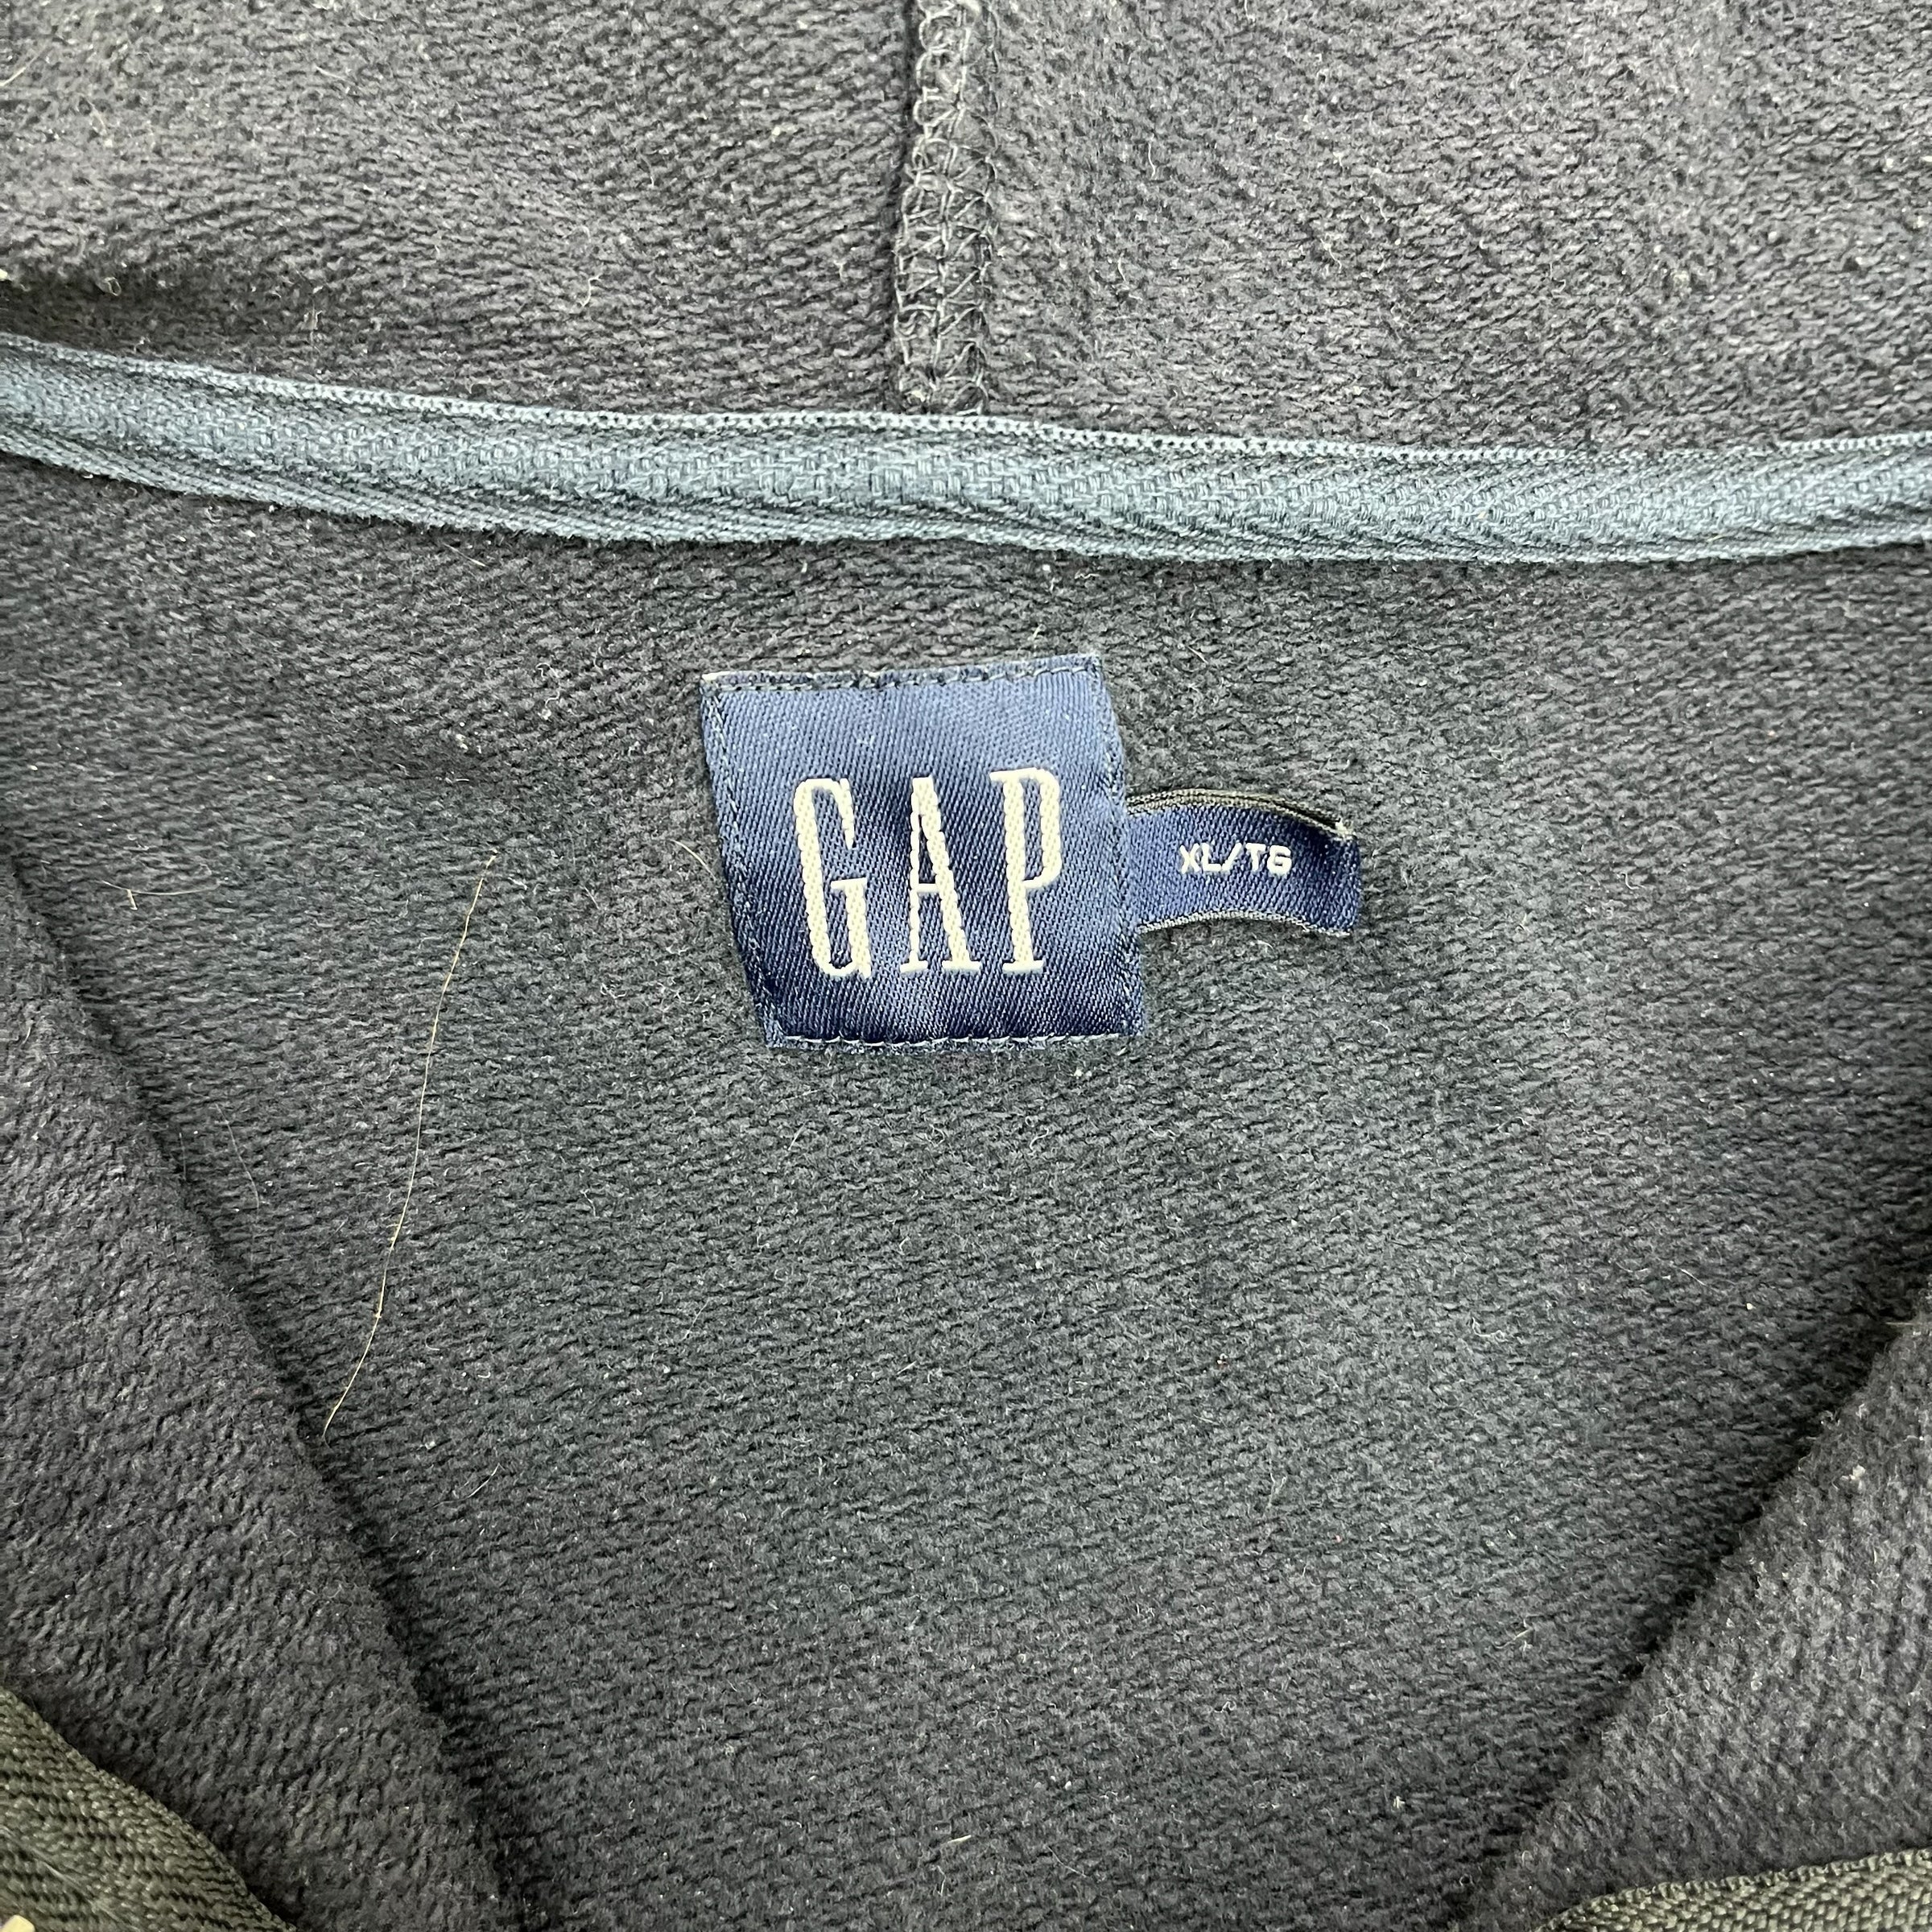 Vintage Gap Zip Up Hoodie Navy